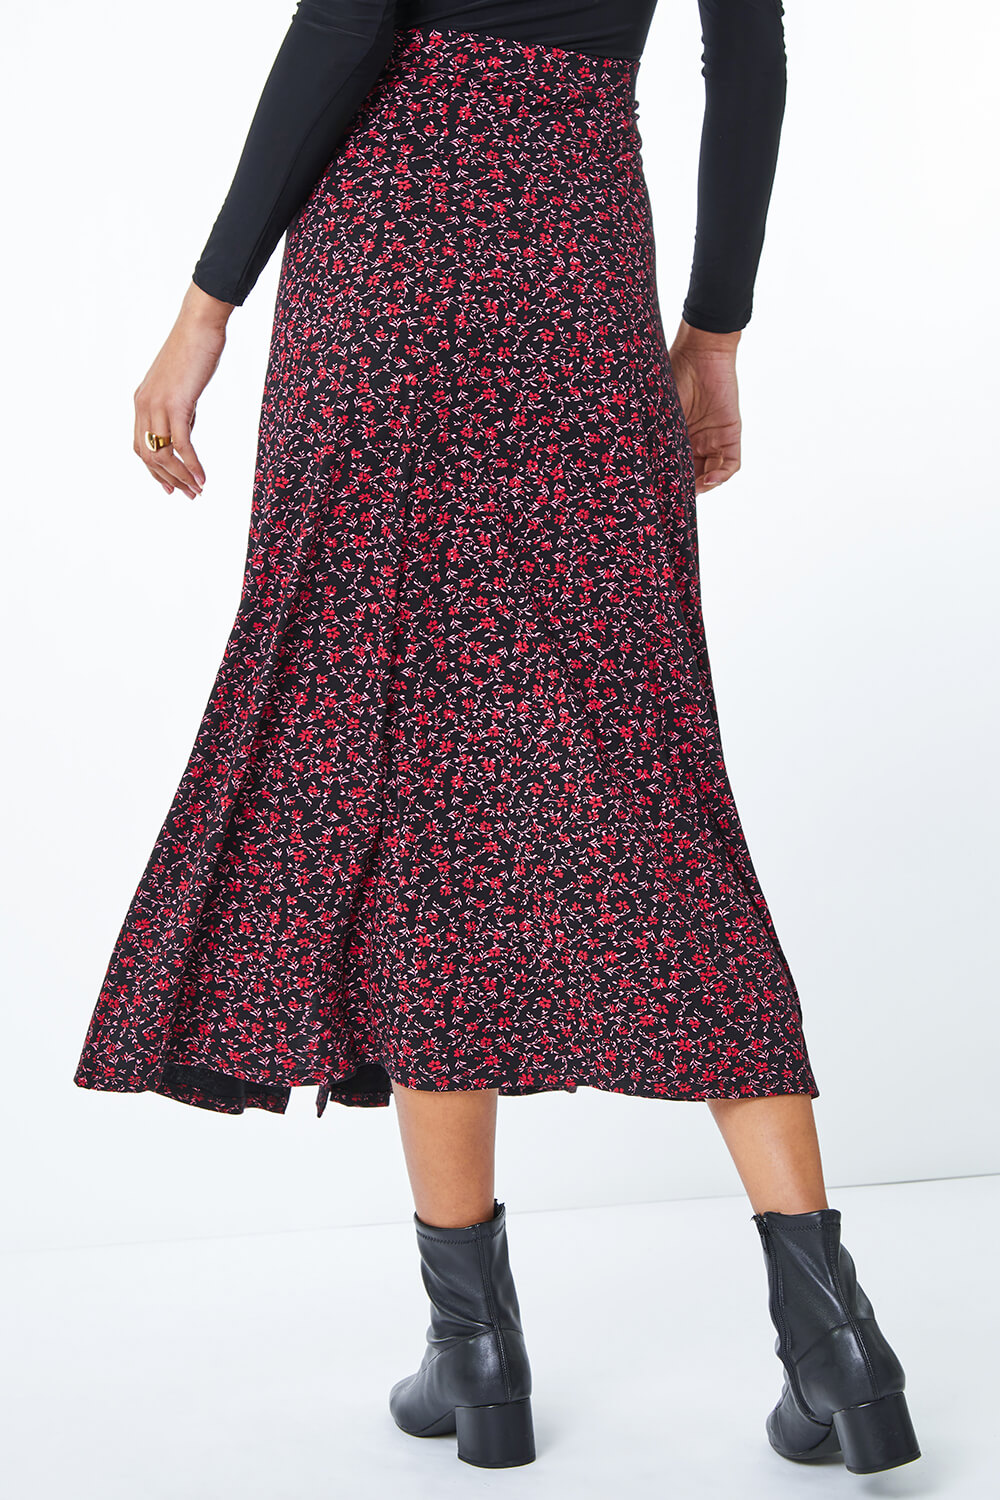 Ditsy Floral Print Midi Skirt in Red - Roman Originals UK